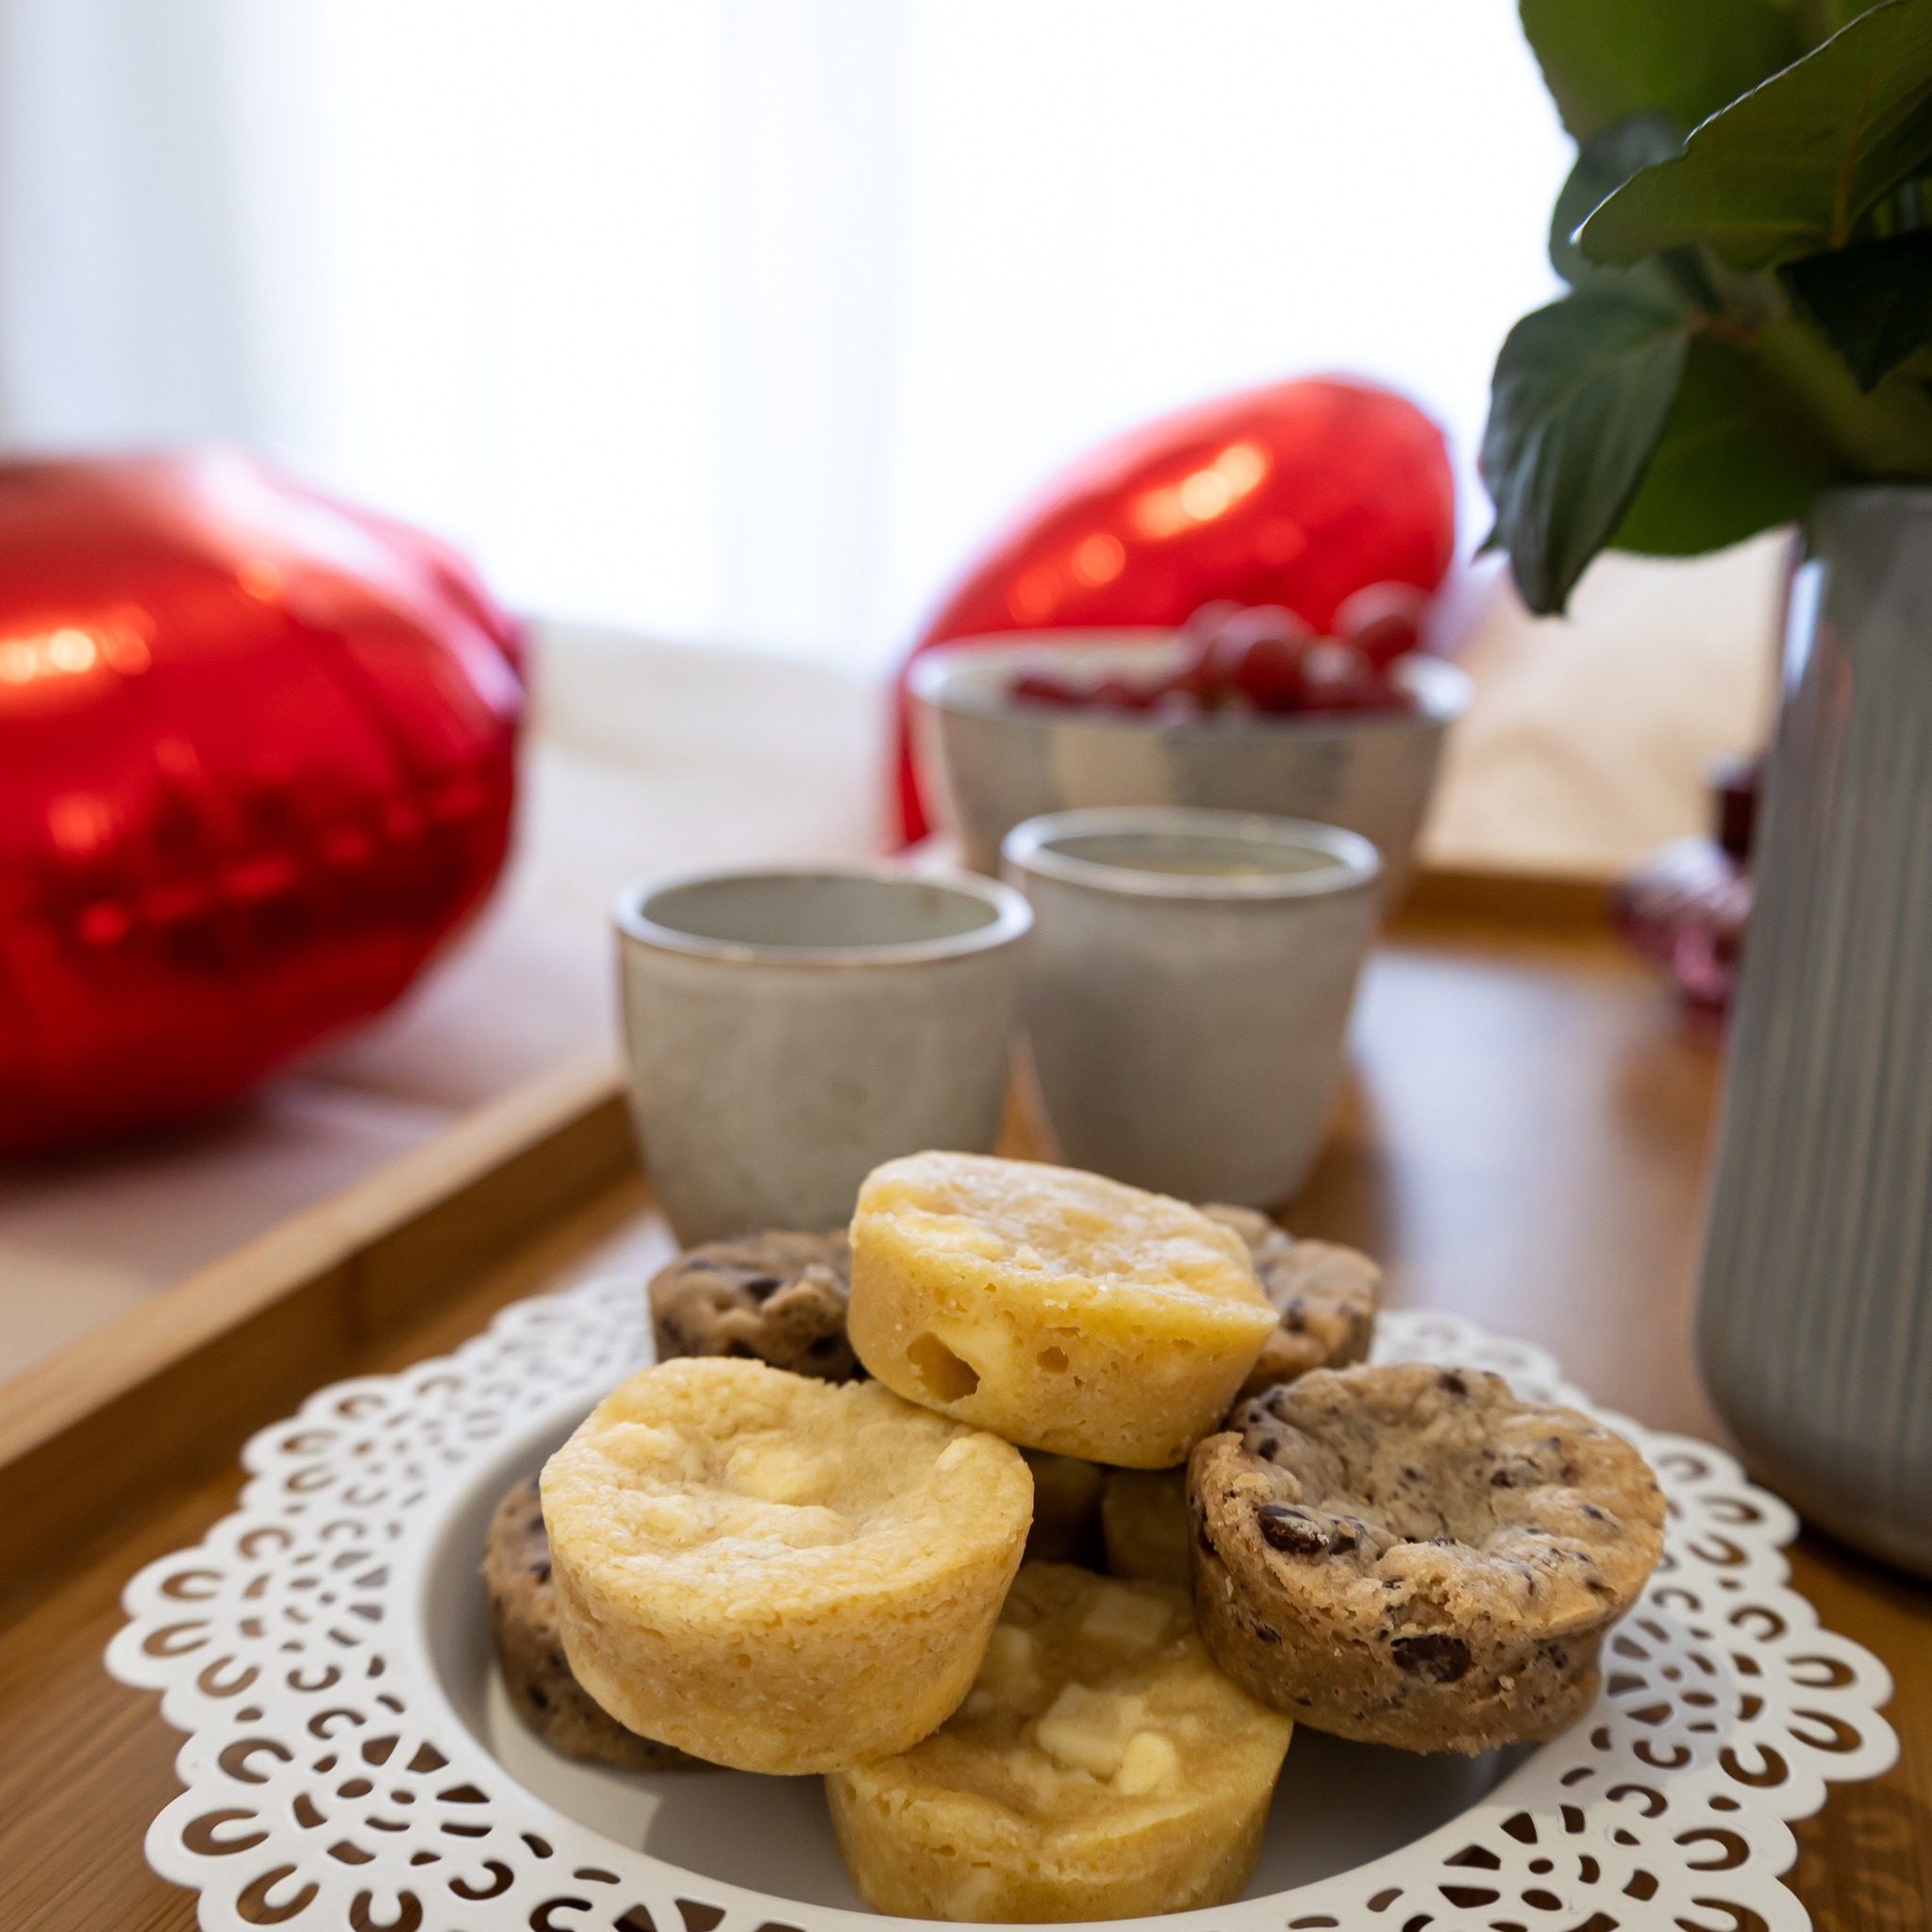 Fondez pour l'amour et savourez le délice ultime avec nos Cookies Giraudon ❤️

🍪 Faits maison à Gémenos (13)
📍Disponibles dans plusieurs points de vente
💌 Plus d’infos sur notre site web (lien dans notre bio)

#CookiesGiraudon #SaintValentinGourmande #CookiesAvecAmour #JoyeuseSaintValentin #GourmandiseAuthentique #homemadewithlove #CookiesArtisanaux #FaitAvecAmour #Gémenos #CuisineArtisanale #marseille #MadeInFrance